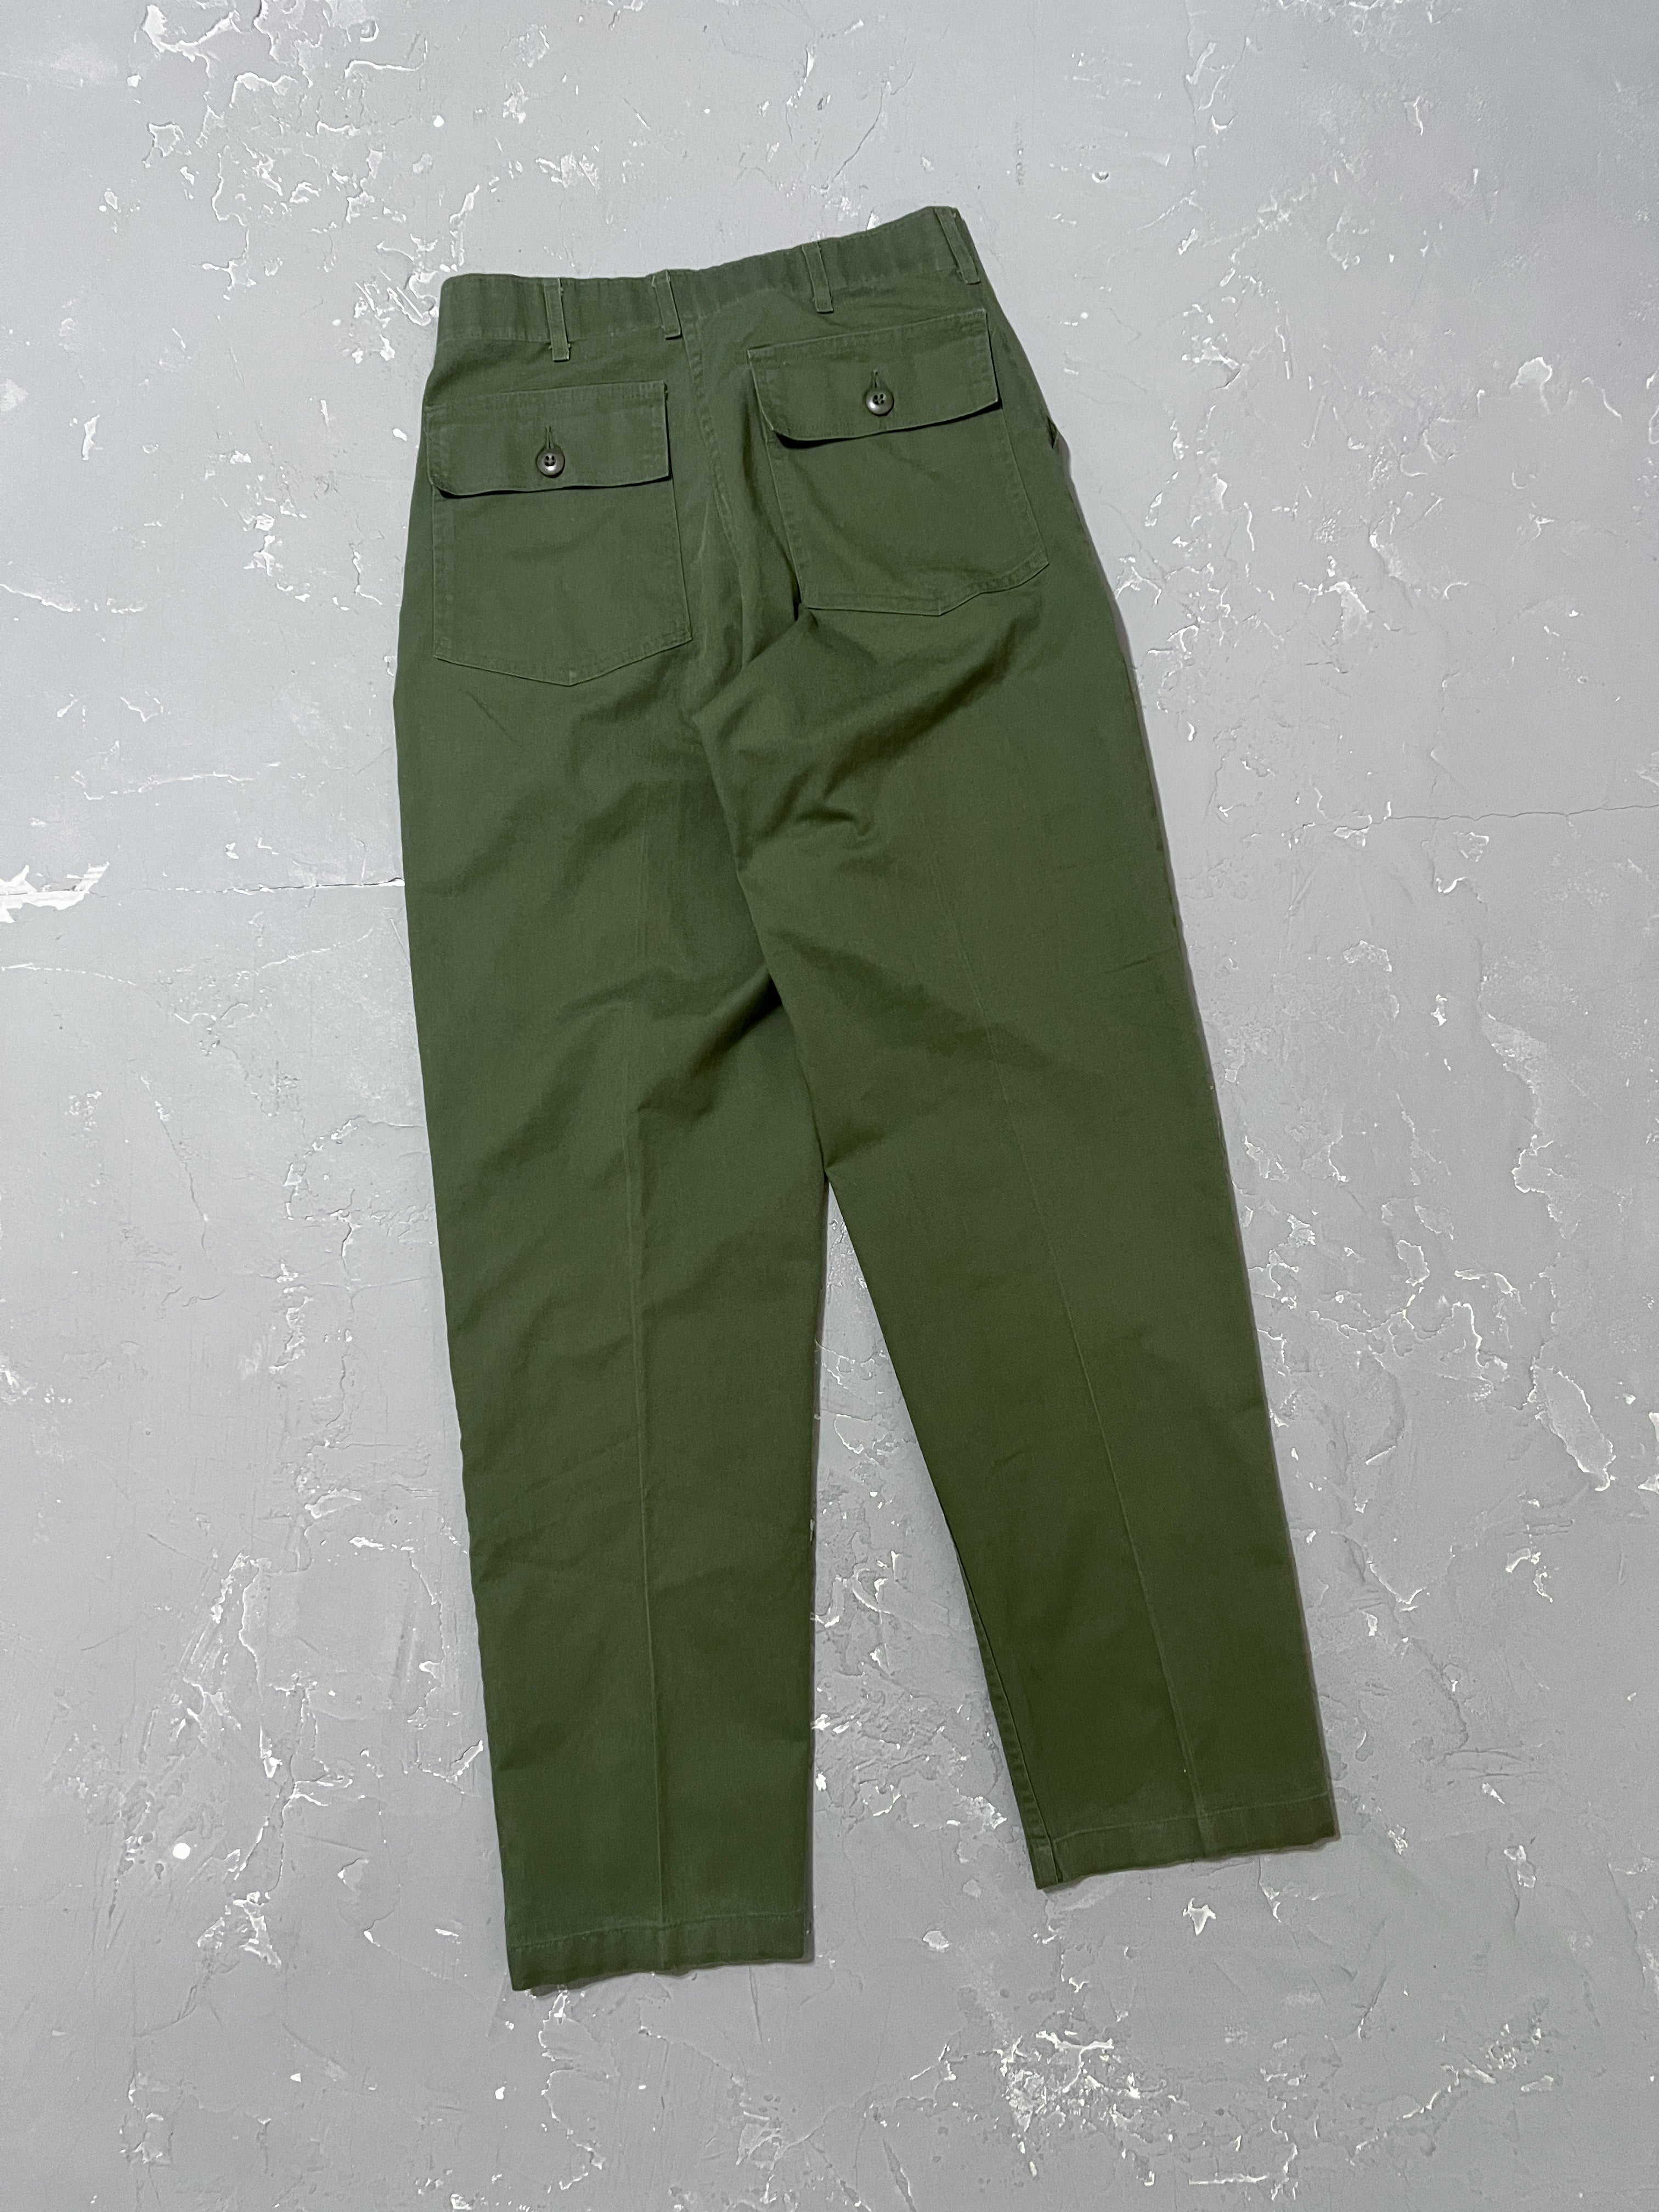 1970s OG-507 Fatigue Pants [30 x 32]